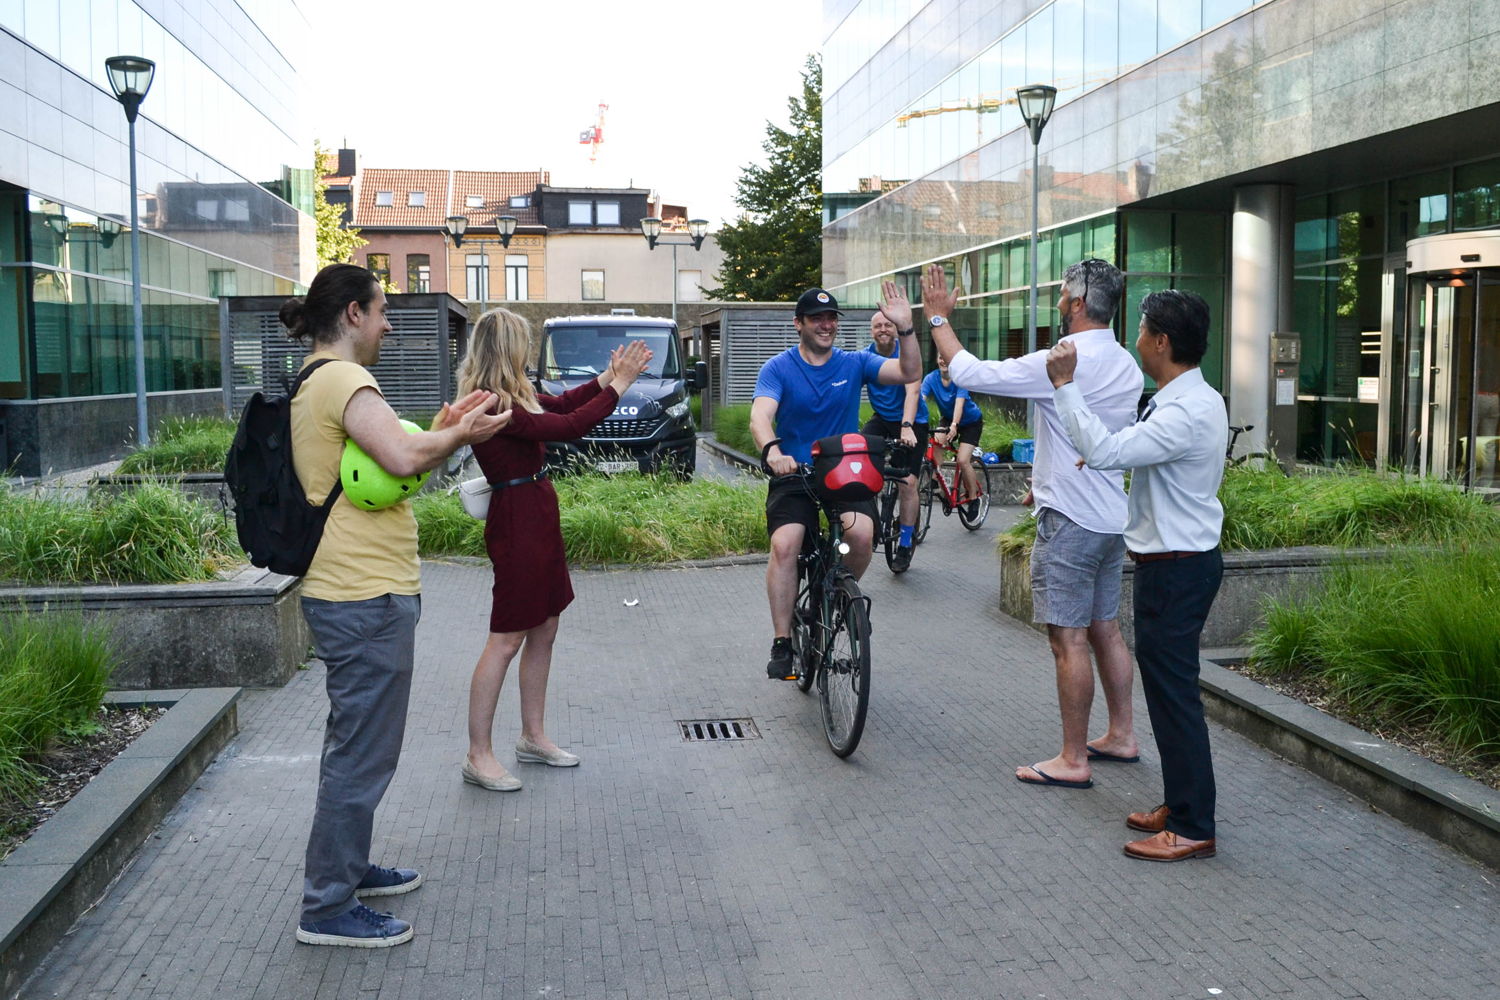 Vier Dashdoc-medewerkers vertrokken woensdagochtend met de fiets naar Vilvoorde, waar ze werden opgewacht door hun Franse collega's.